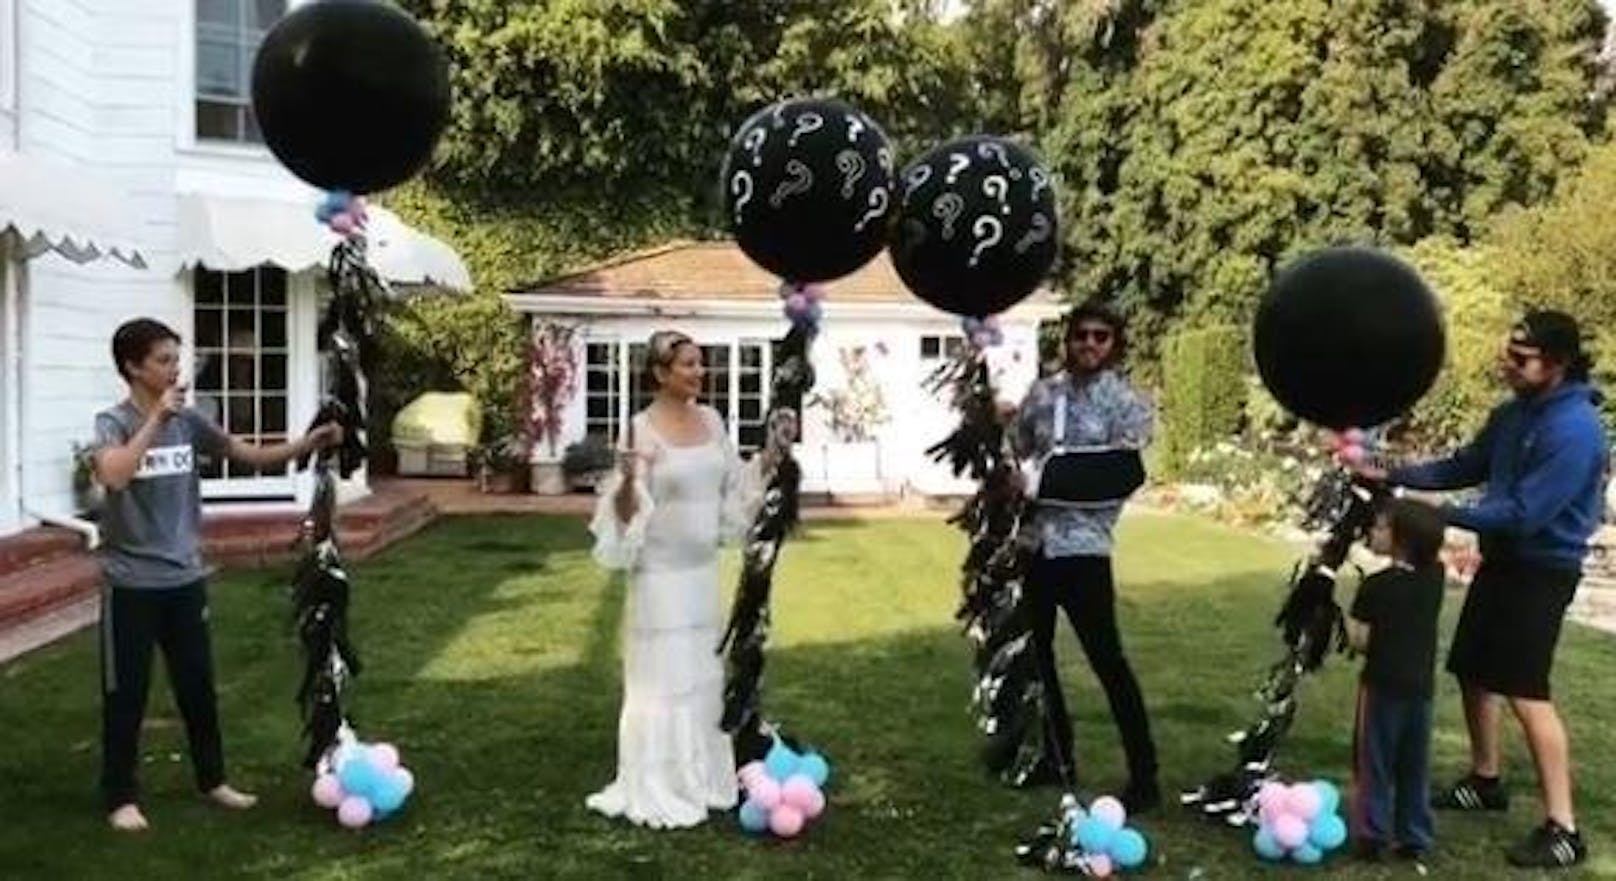 07.04.2018: Kate Hudson gab auf Instagram bekannt, dass sie ihr drittes Kind erwartet.